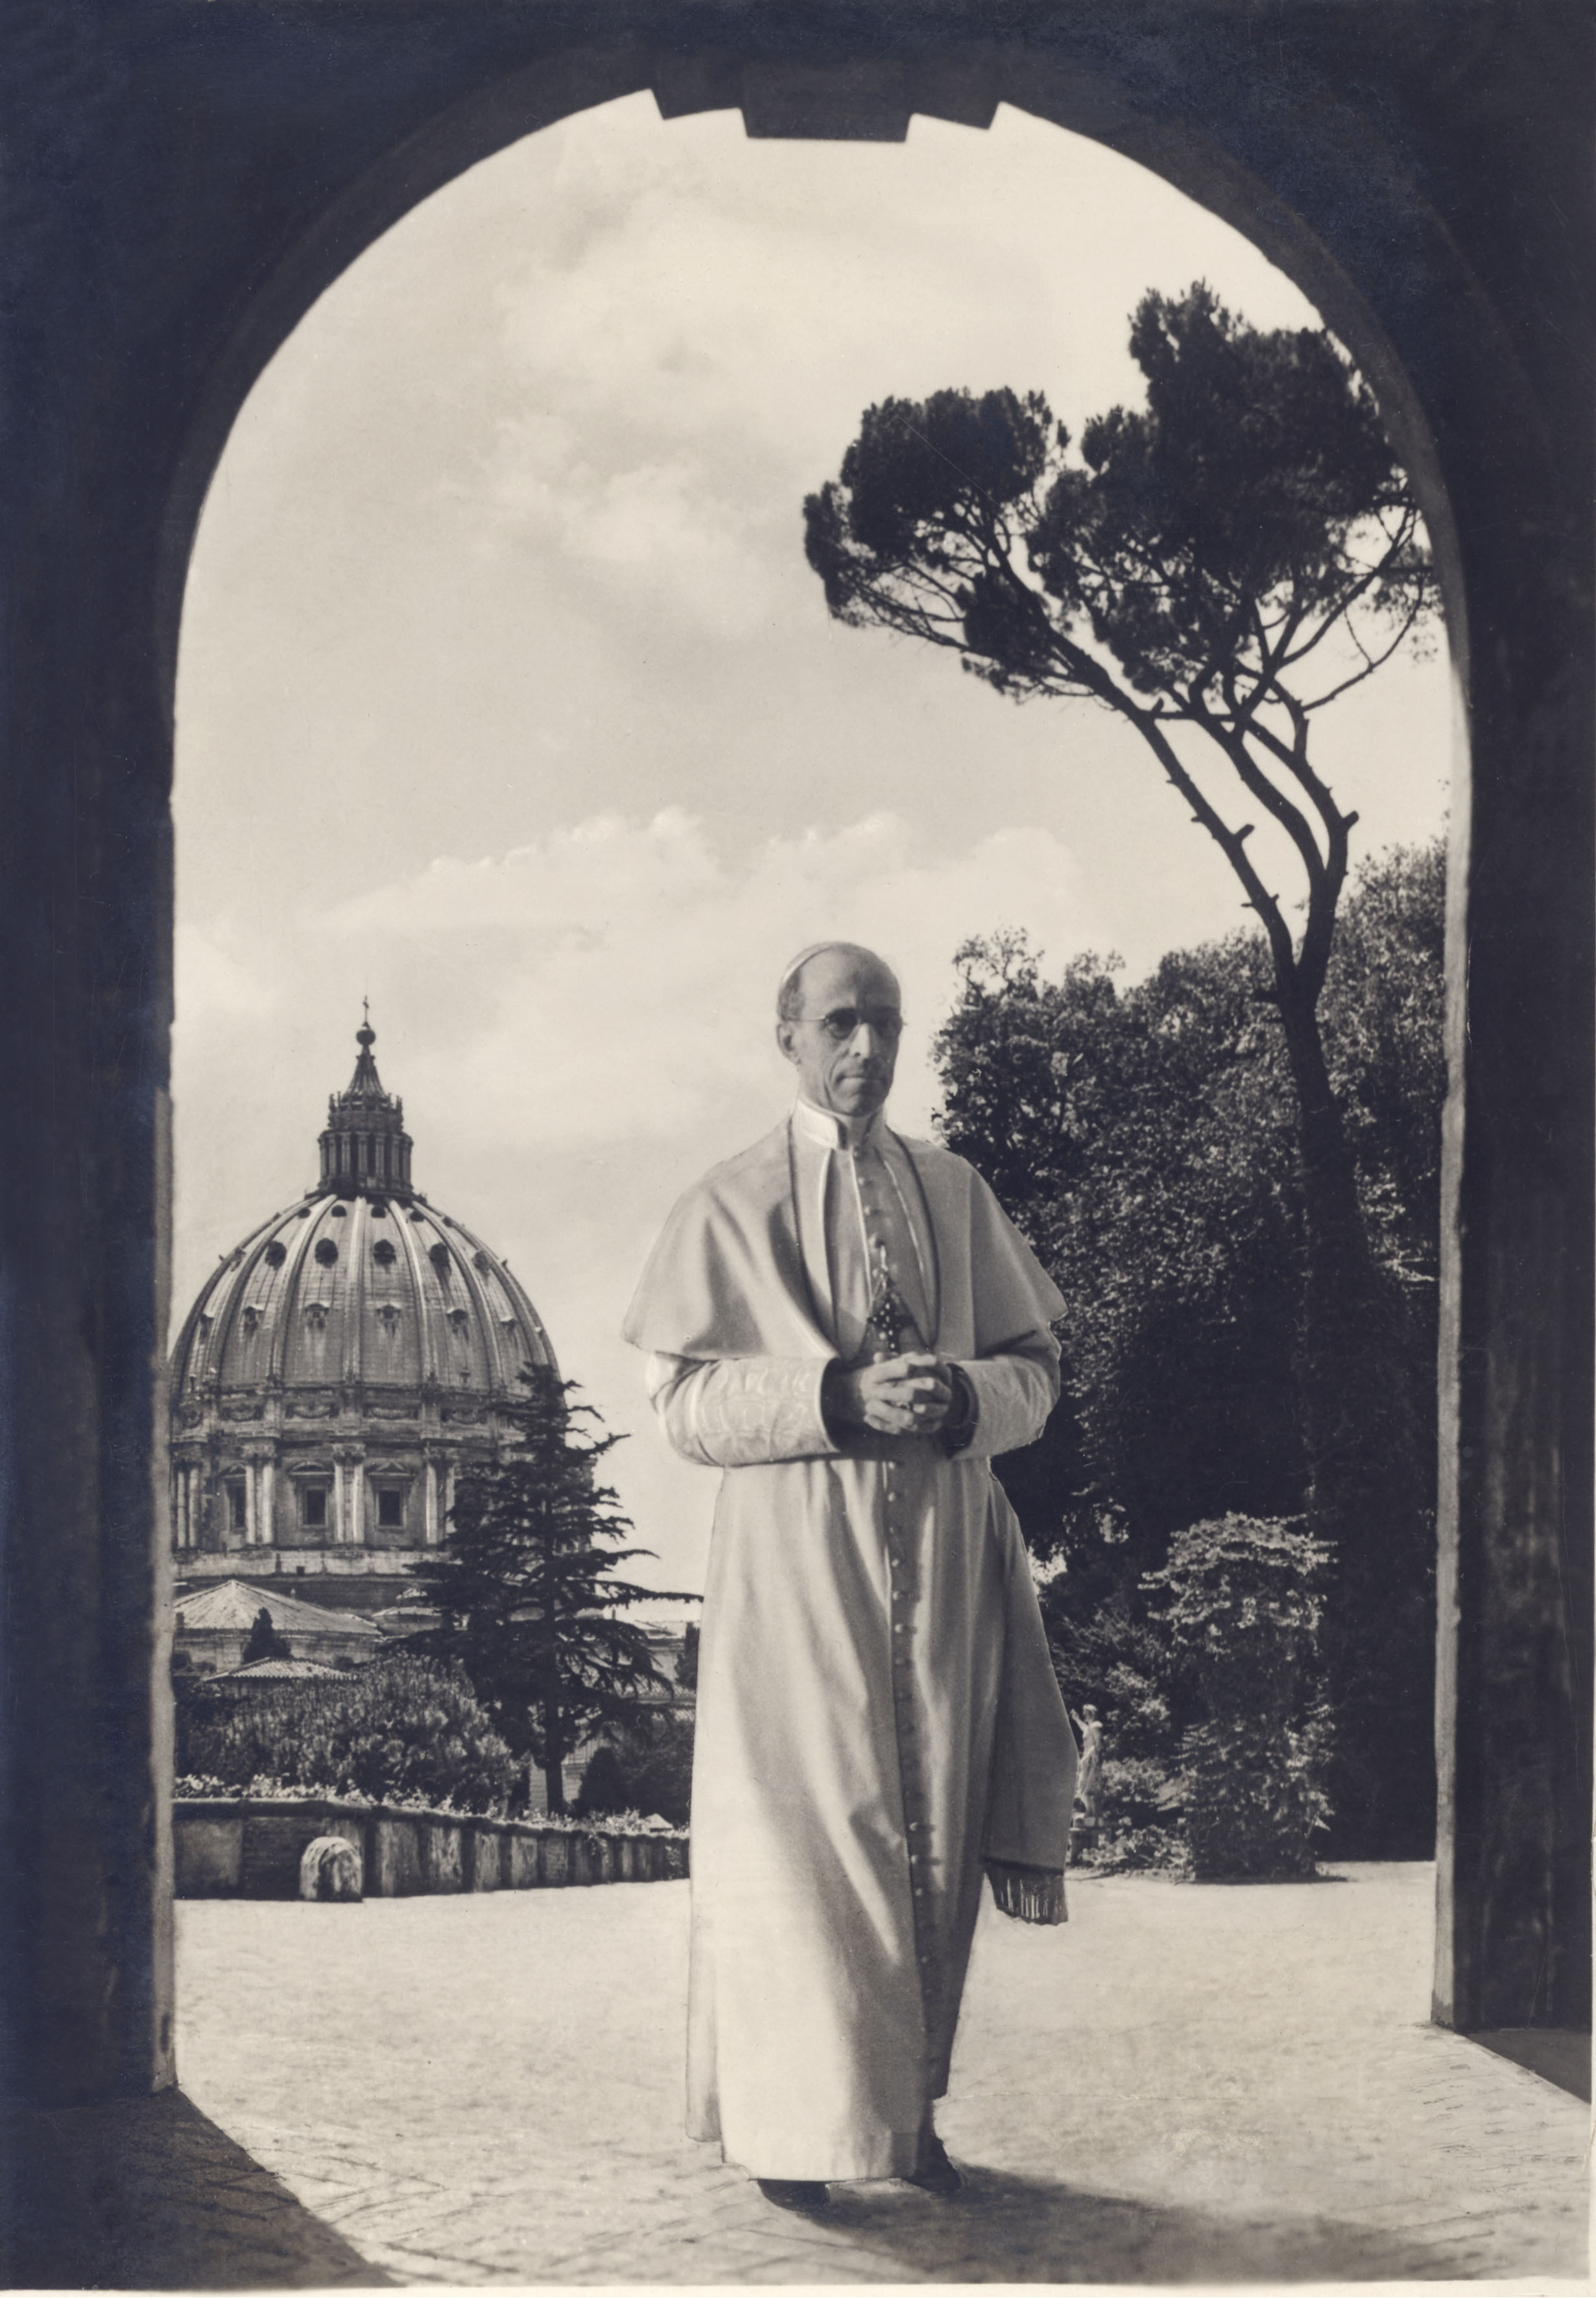 Ritratto di Pio XII: il suo pontificato dura dal 1939 al 1958